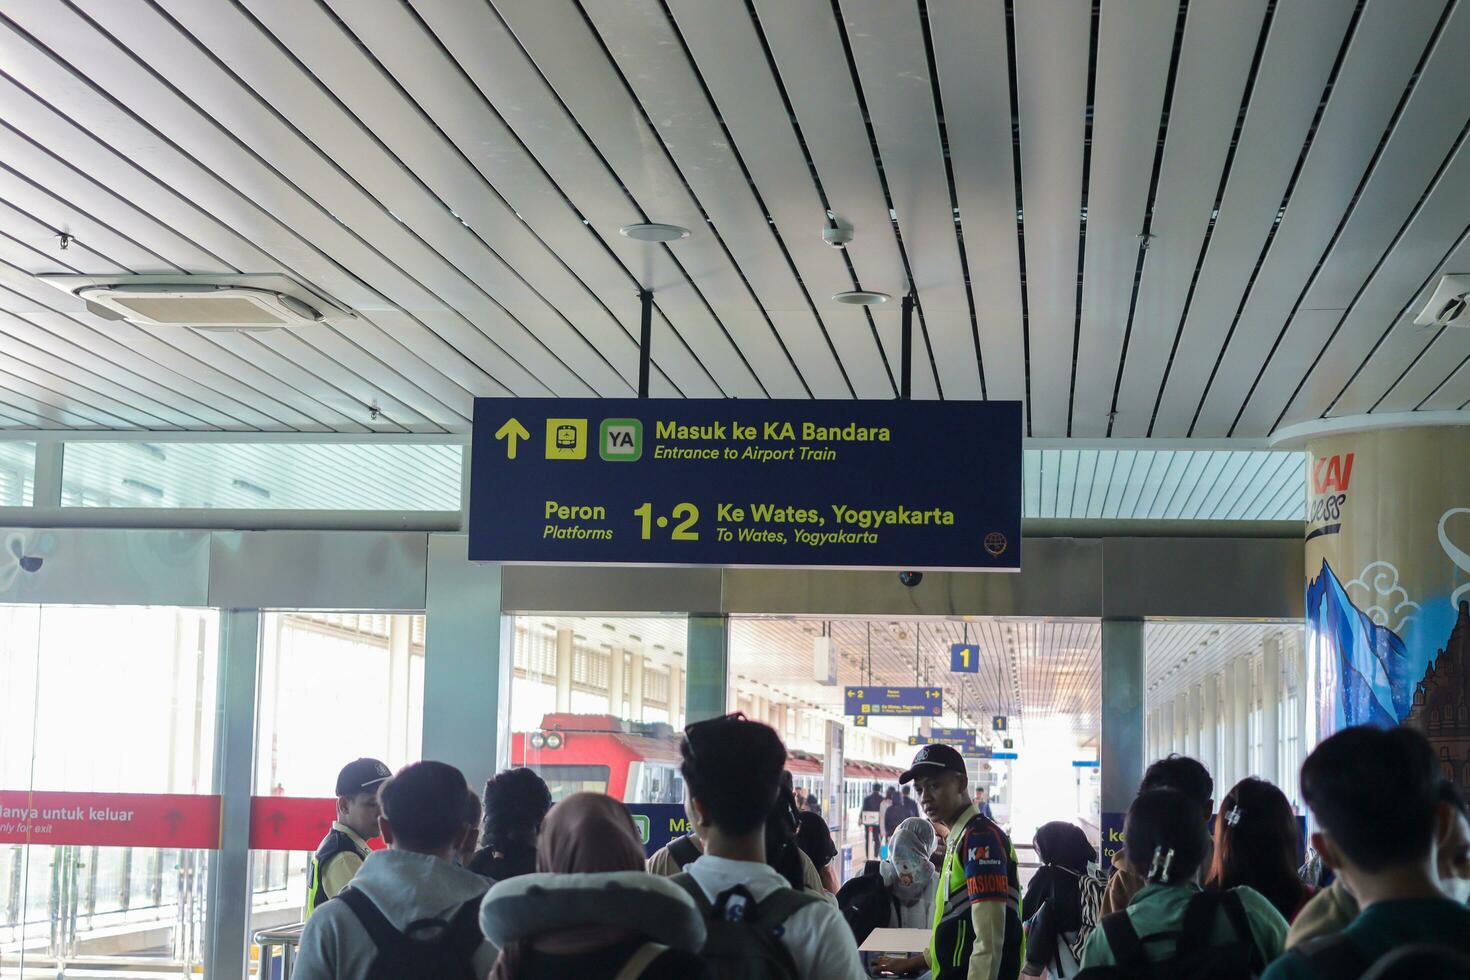 a sim aeroporto trem, operado de pt trilho, ofertas uma confortável e confiável transporte ligação entre yogyakarta internacional aeroporto e a cidade Centro. kulon progo - Indonésia, 09 03 2023 foto